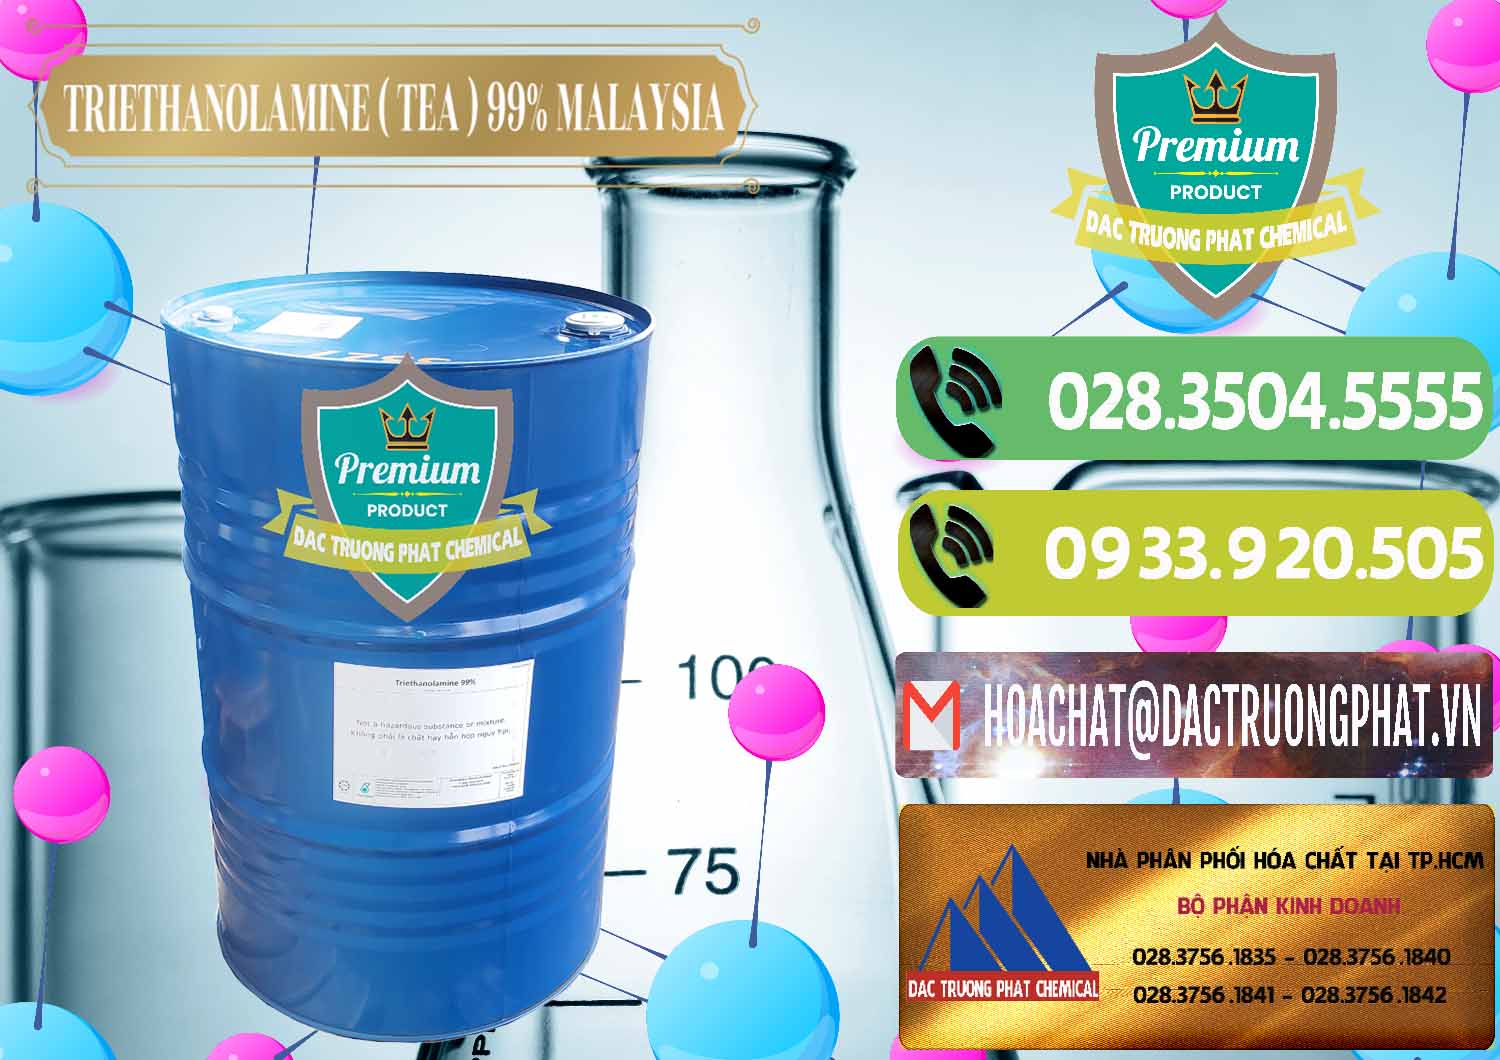 Cty bán _ cung cấp TEA - Triethanolamine 99% Mã Lai Malaysia - 0323 - Cty chuyên cung cấp ( nhập khẩu ) hóa chất tại TP.HCM - hoachatmientay.vn